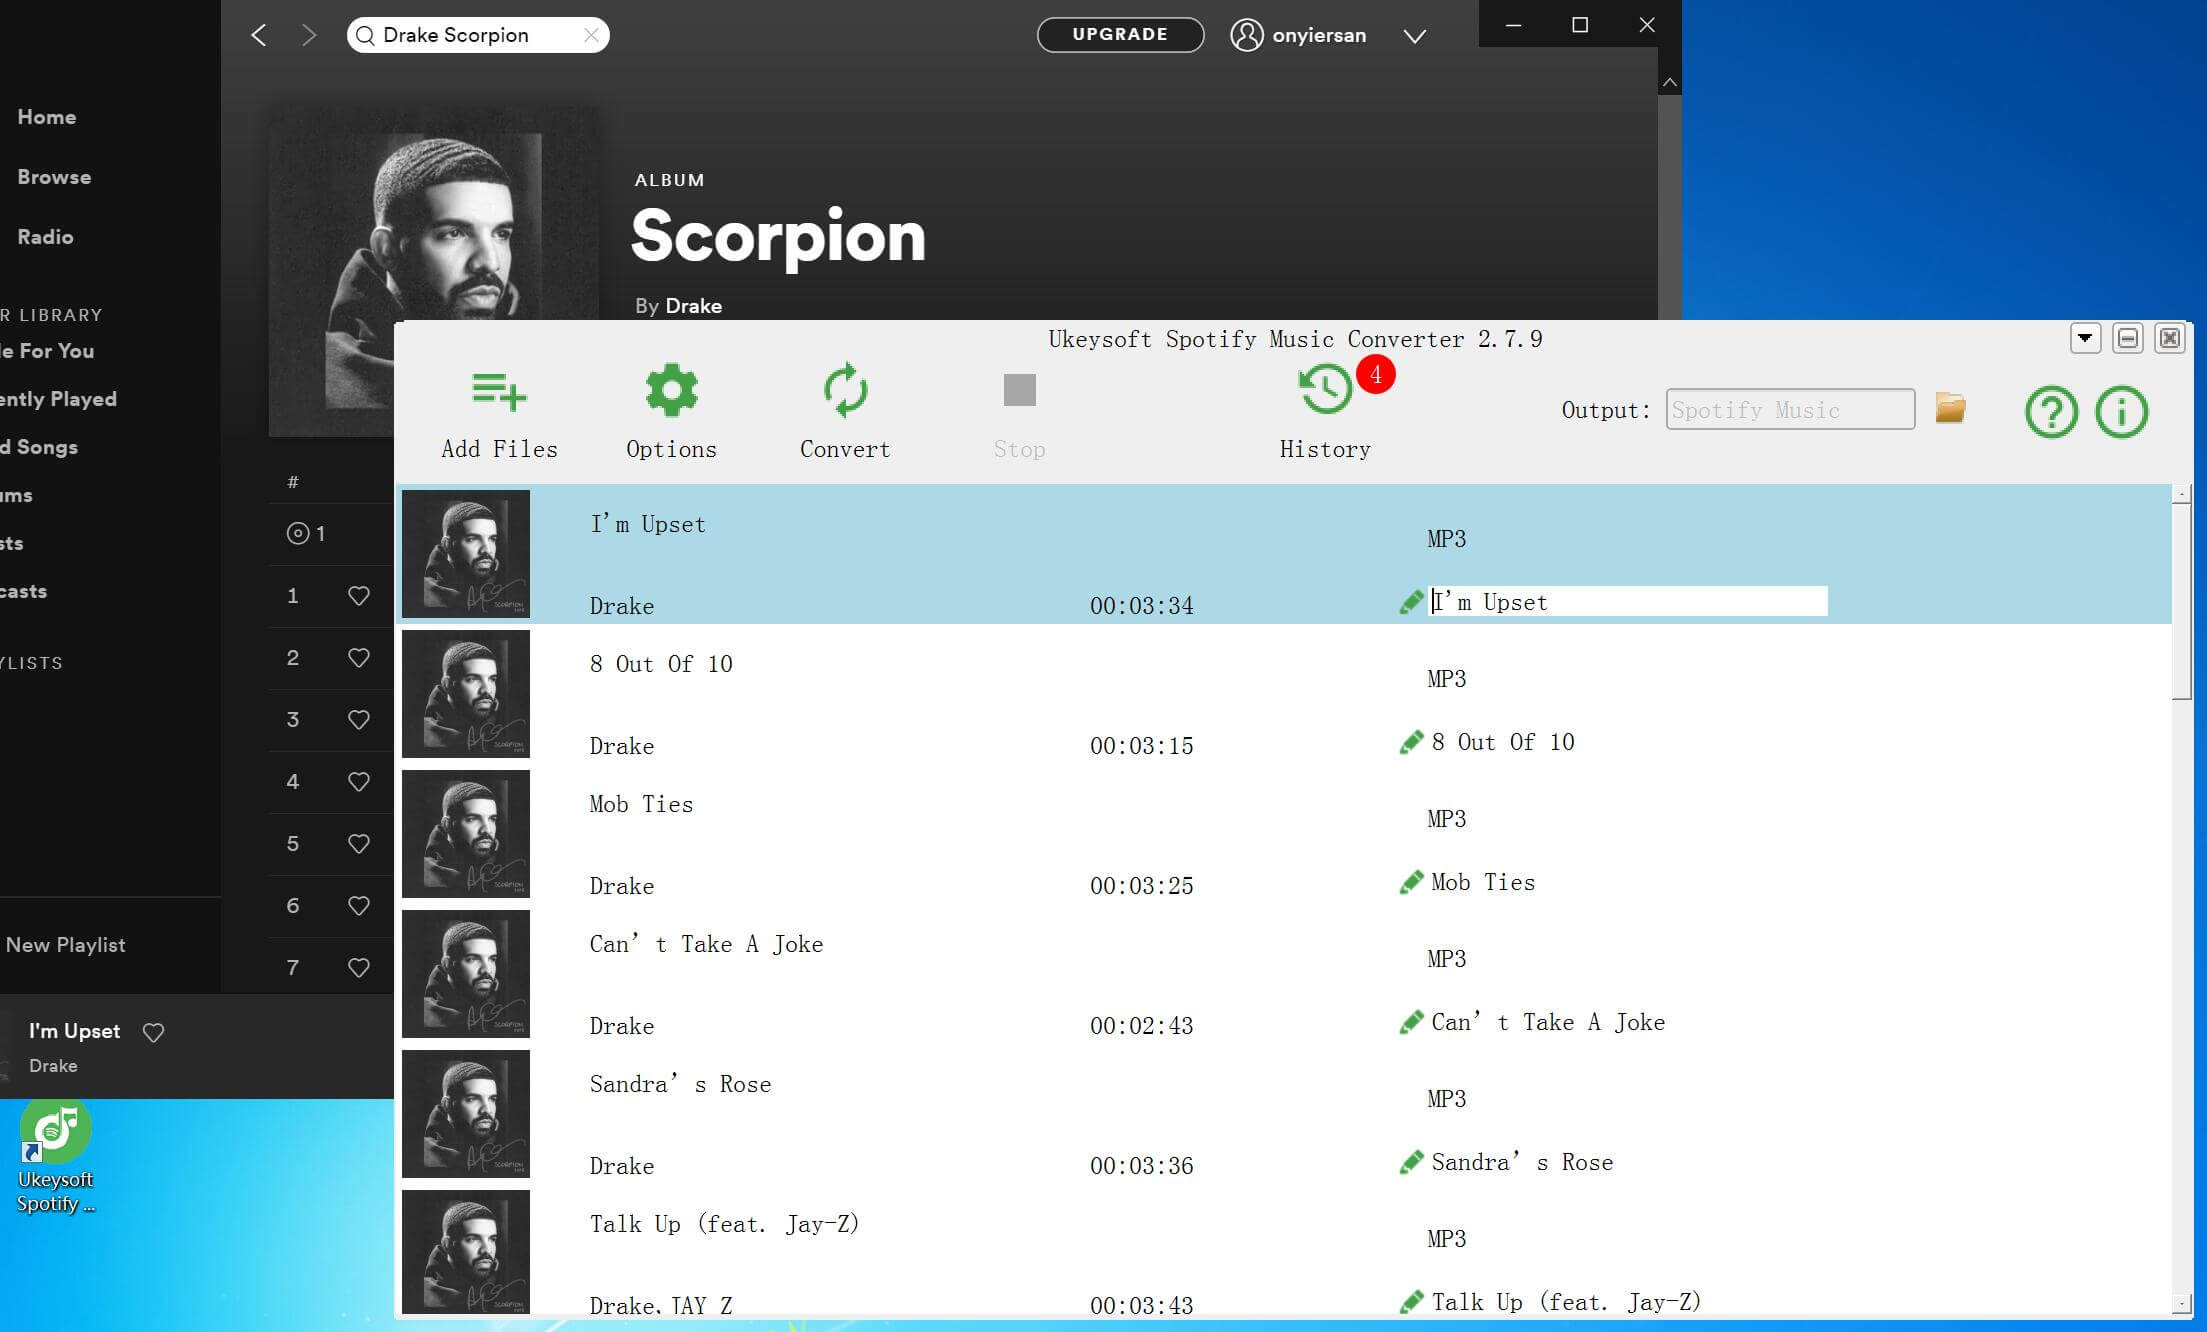 téléchargement gratuit Drake's Scorpion Album de Spotify